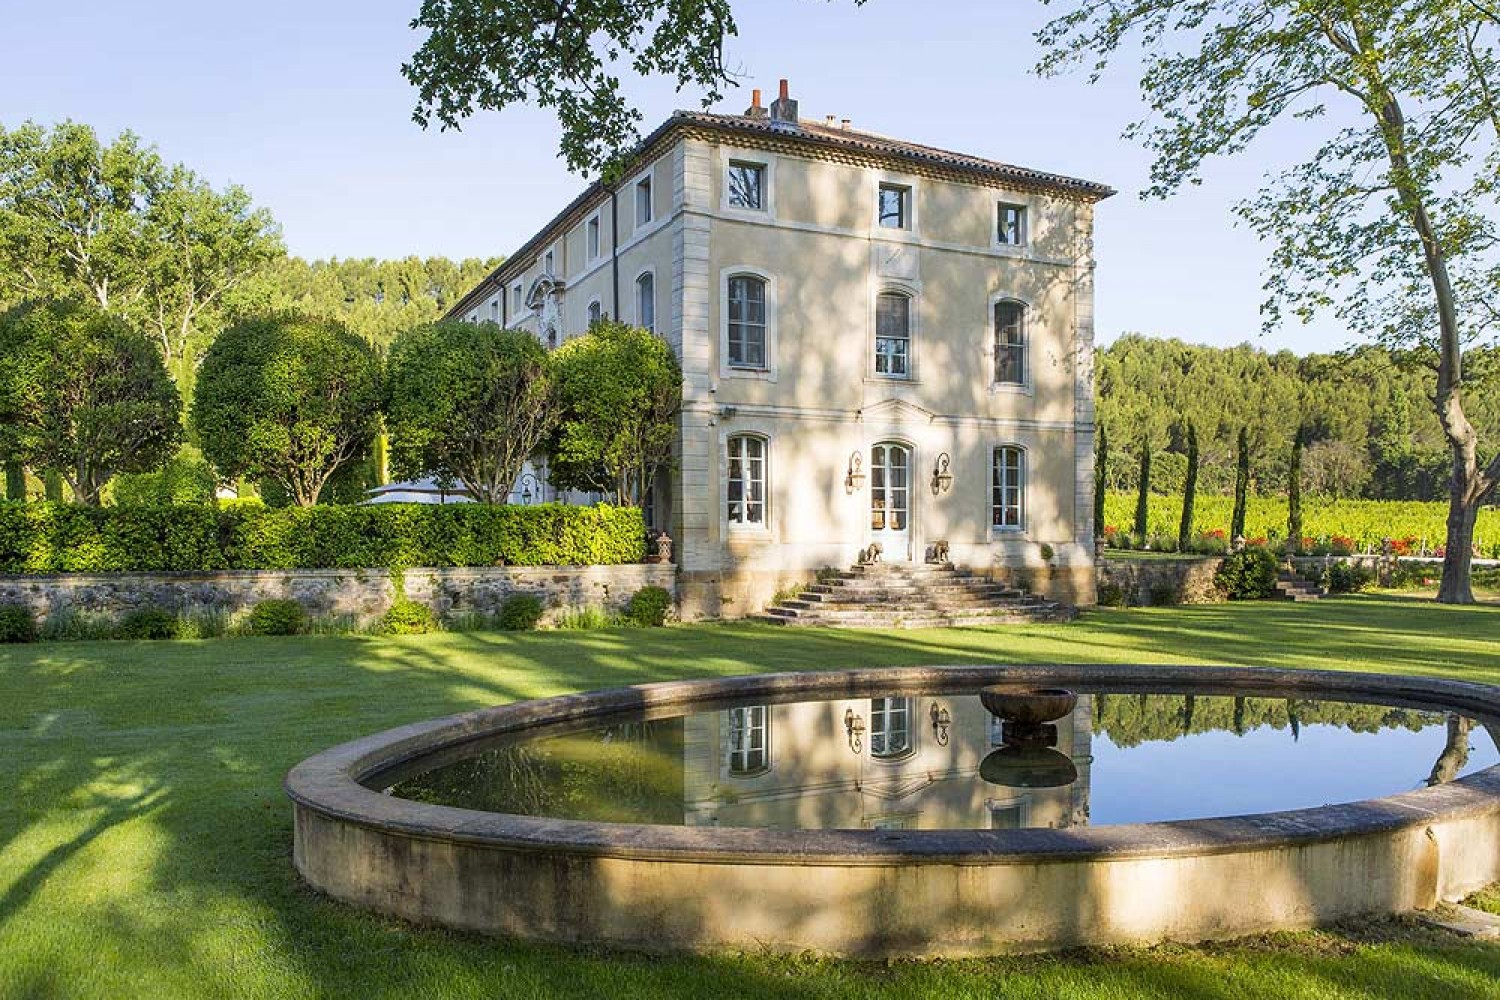 golf-expedition-golf-reizen-frankrijk-regio-provence-chateau-talaud-tuin-met-fontijn-gelegen-aan-chateau-prachtige-omgeving.jpg